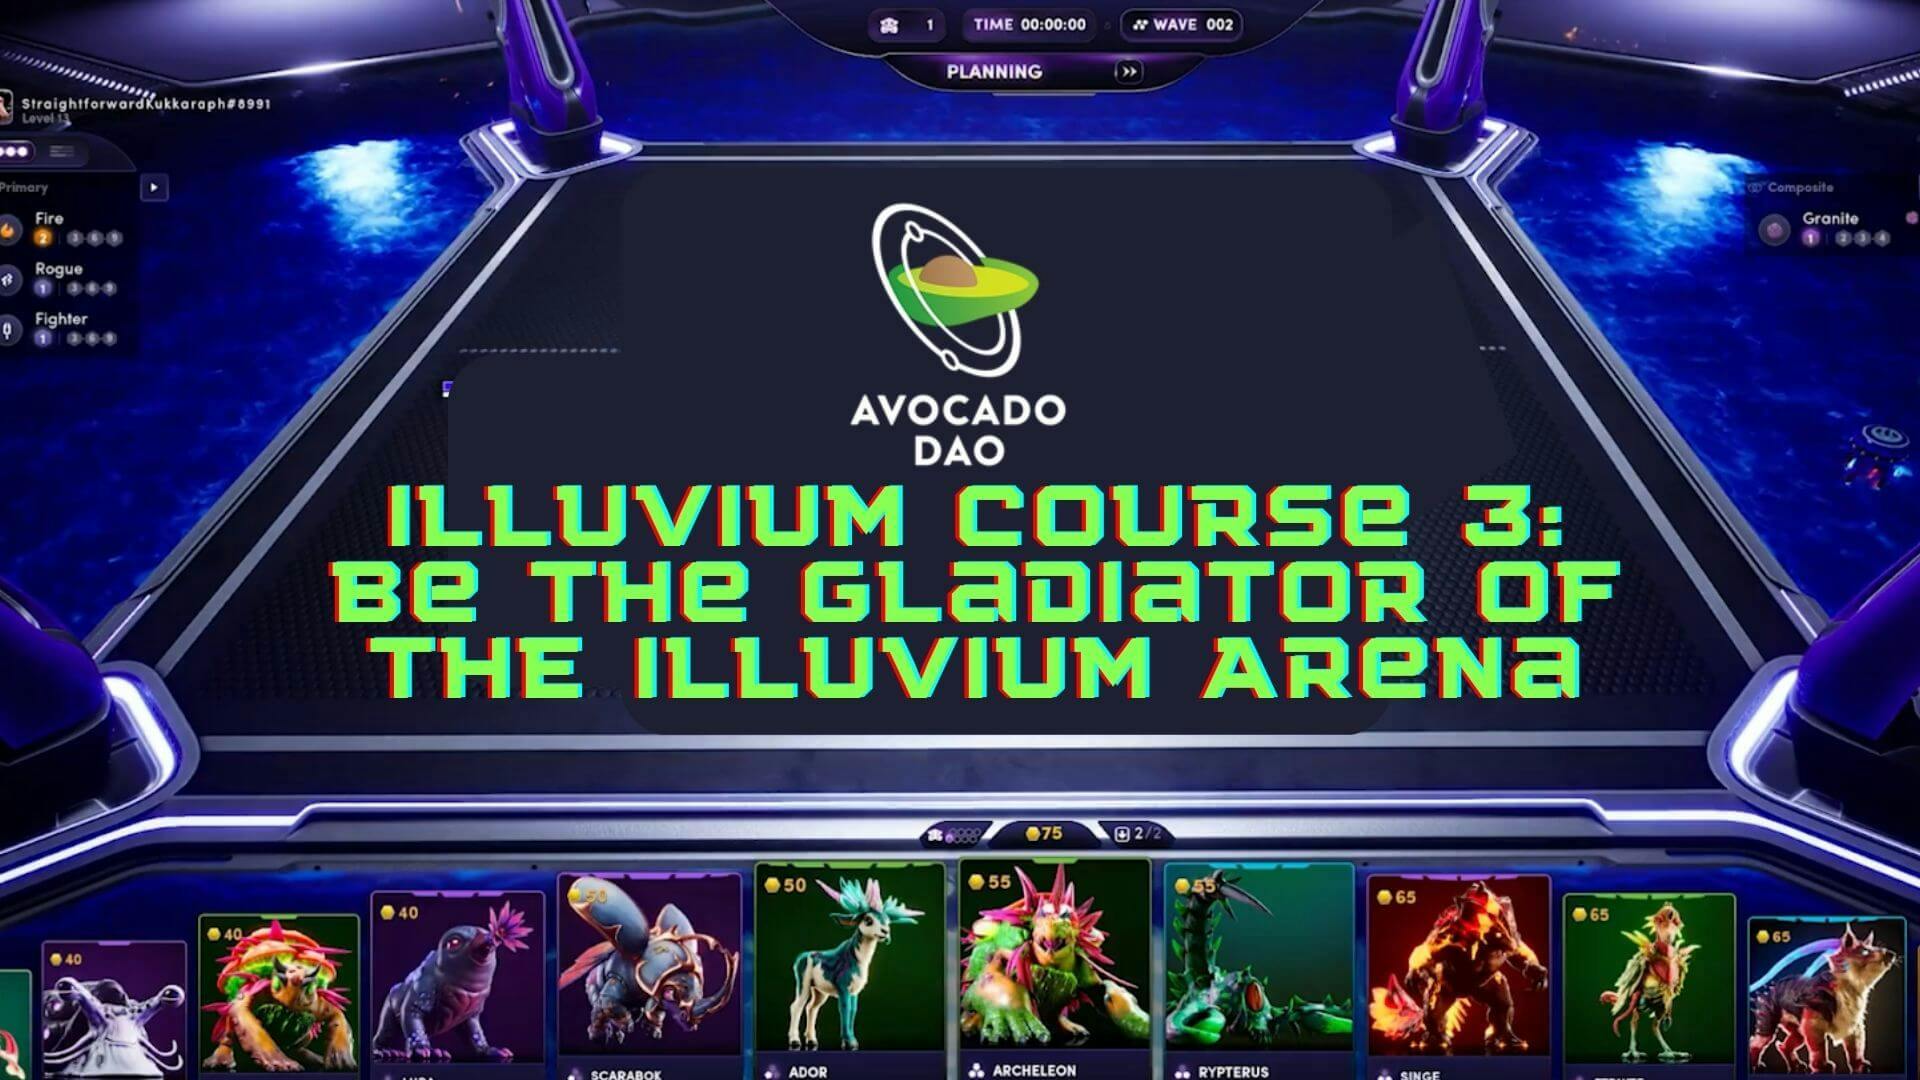 Illuvium Course 3: Be the Gladiator of the Illuvium Arena